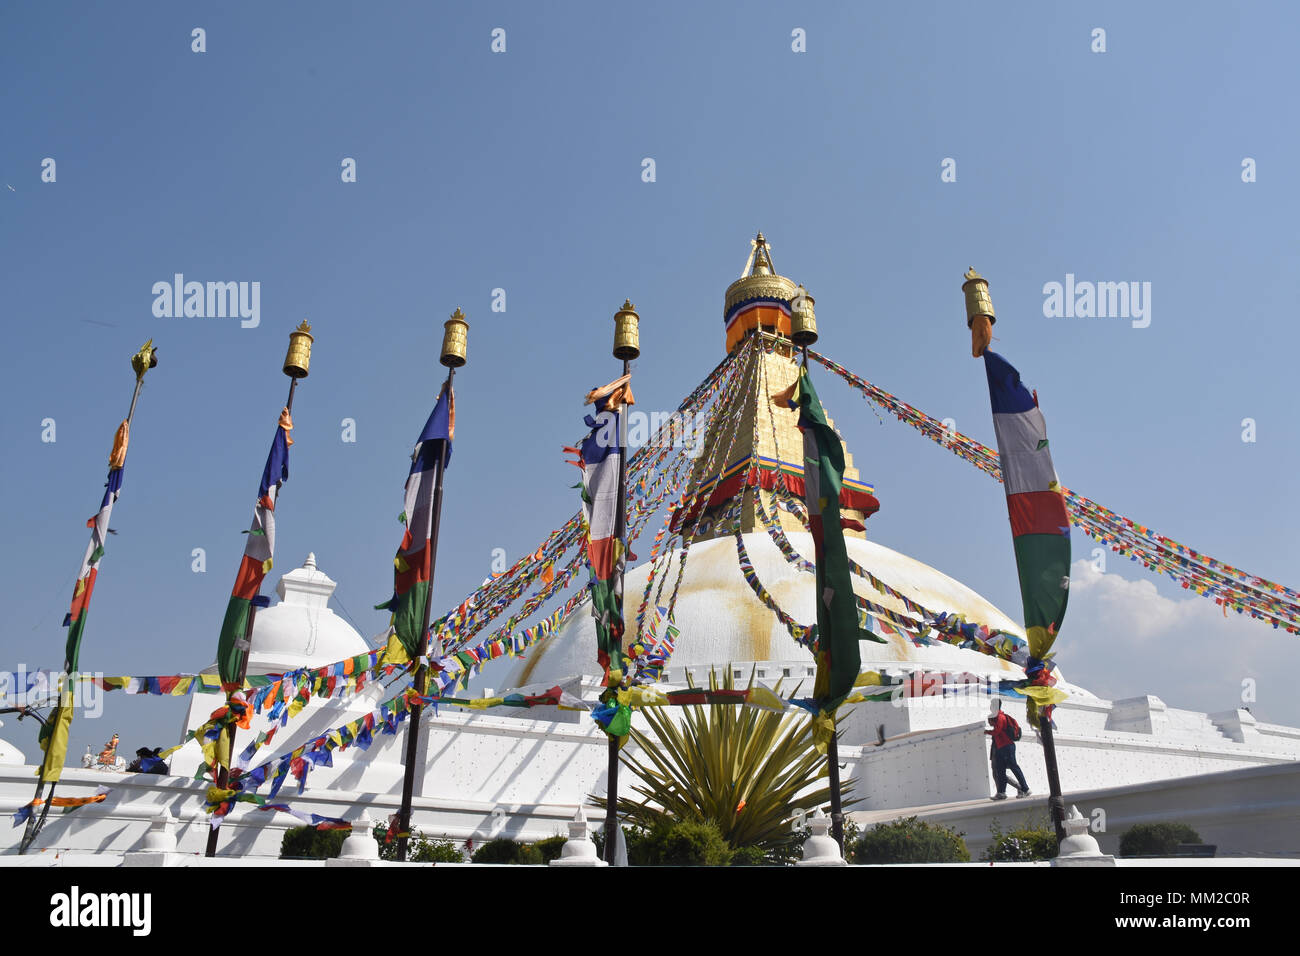 Colorful Boudhanath Stupa in Kathmandu, Nepal Stock Photo